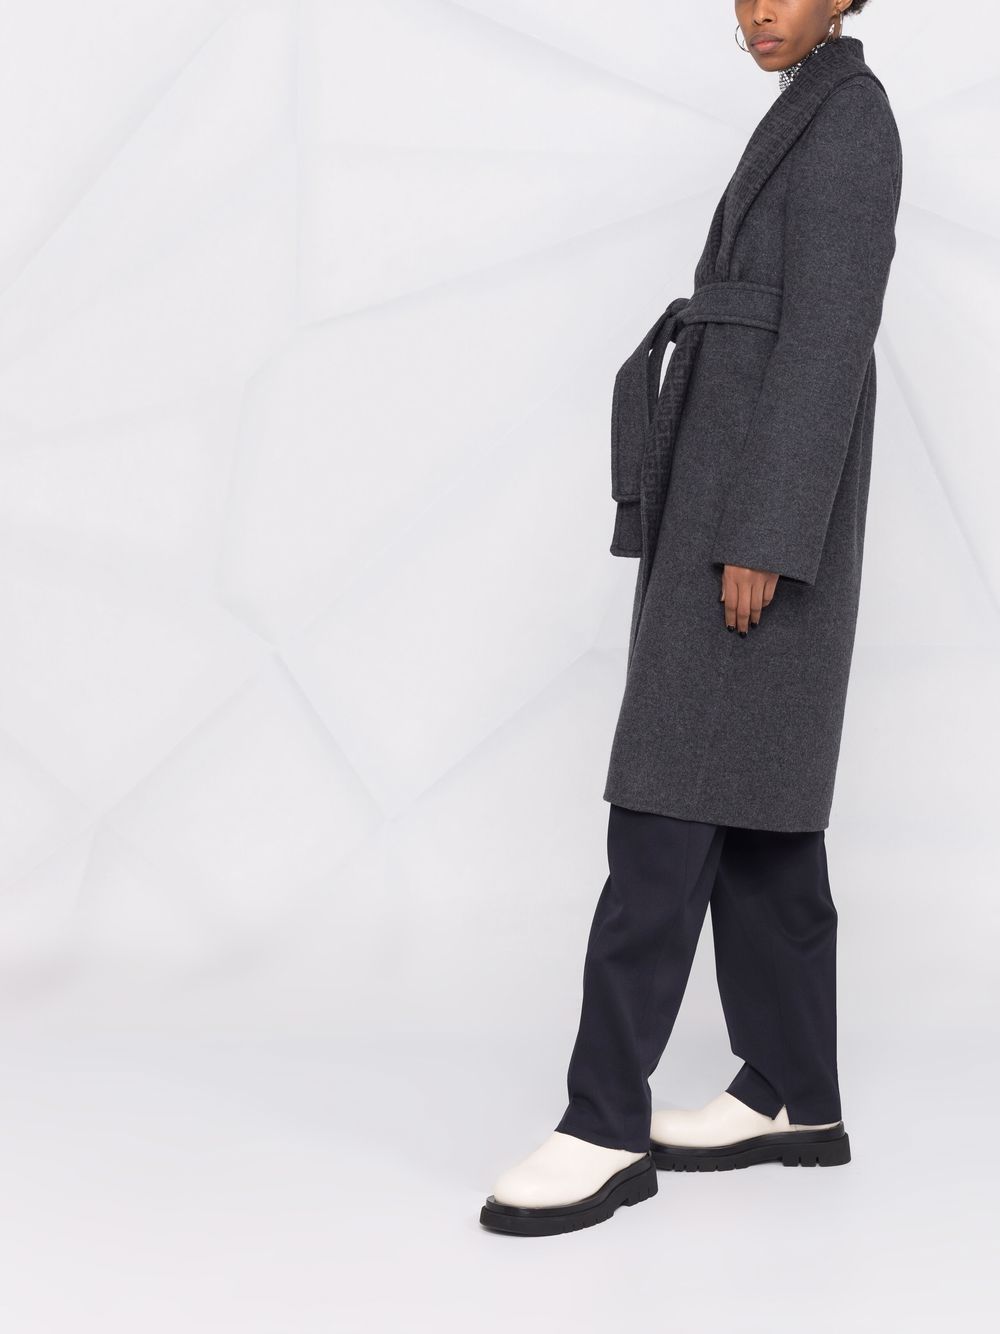 фото Givenchy пальто средней длины с поясом и логотипом 4g